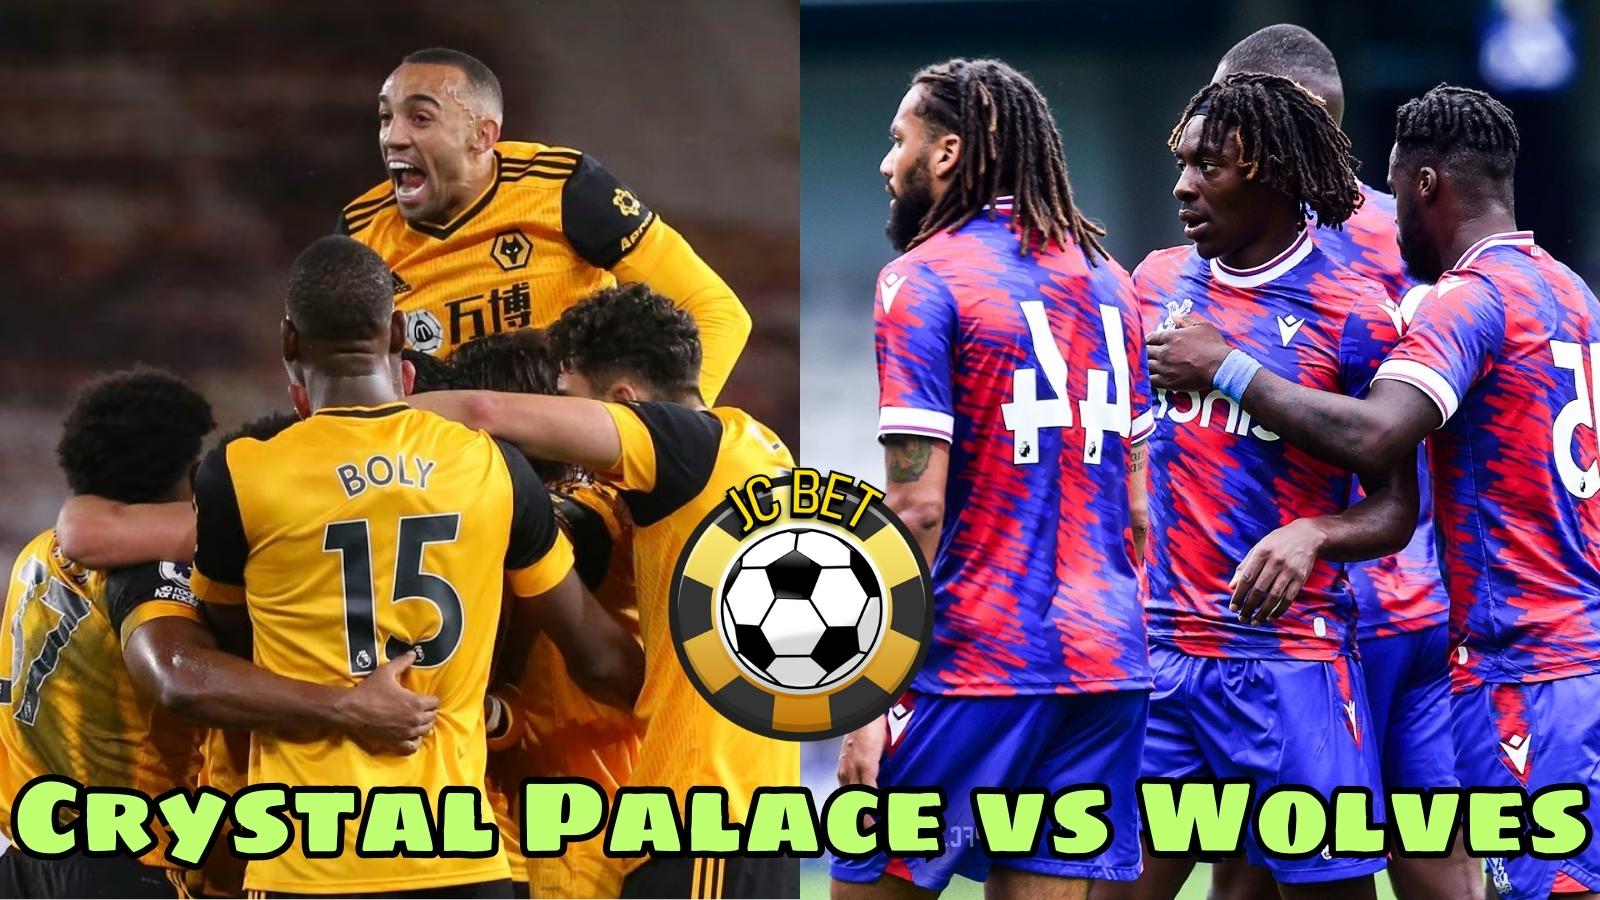 Nhận định Crystal Palace vs Wolves lúc 20h00 ngày 3/9, vòng 4 ngoại hạng anh